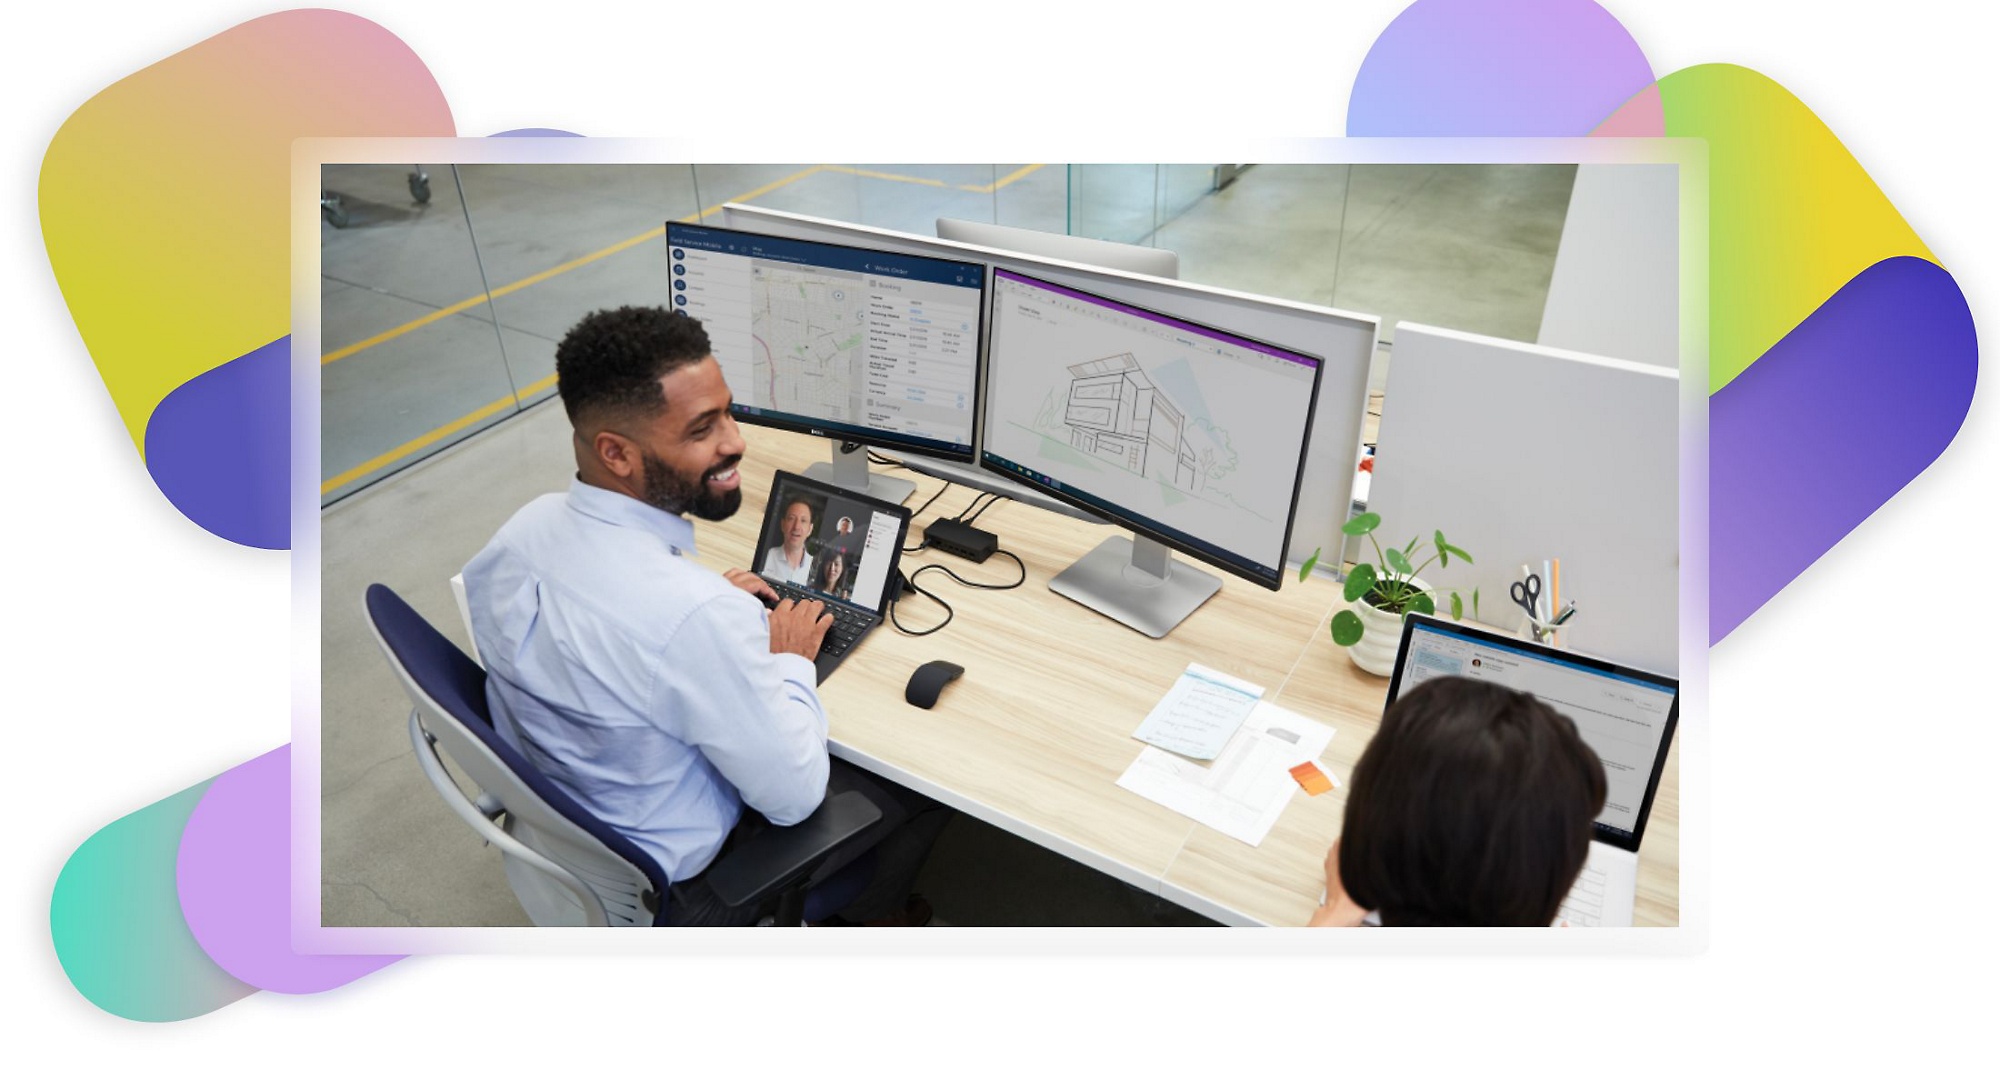 Dve osebi sedita za pisalno mizo, medtem ko je ena od njiju v videoklicu v aplikaciji Teams in si na dveh monitorjih ogleduje arhitekturne načrte in zemljevide.